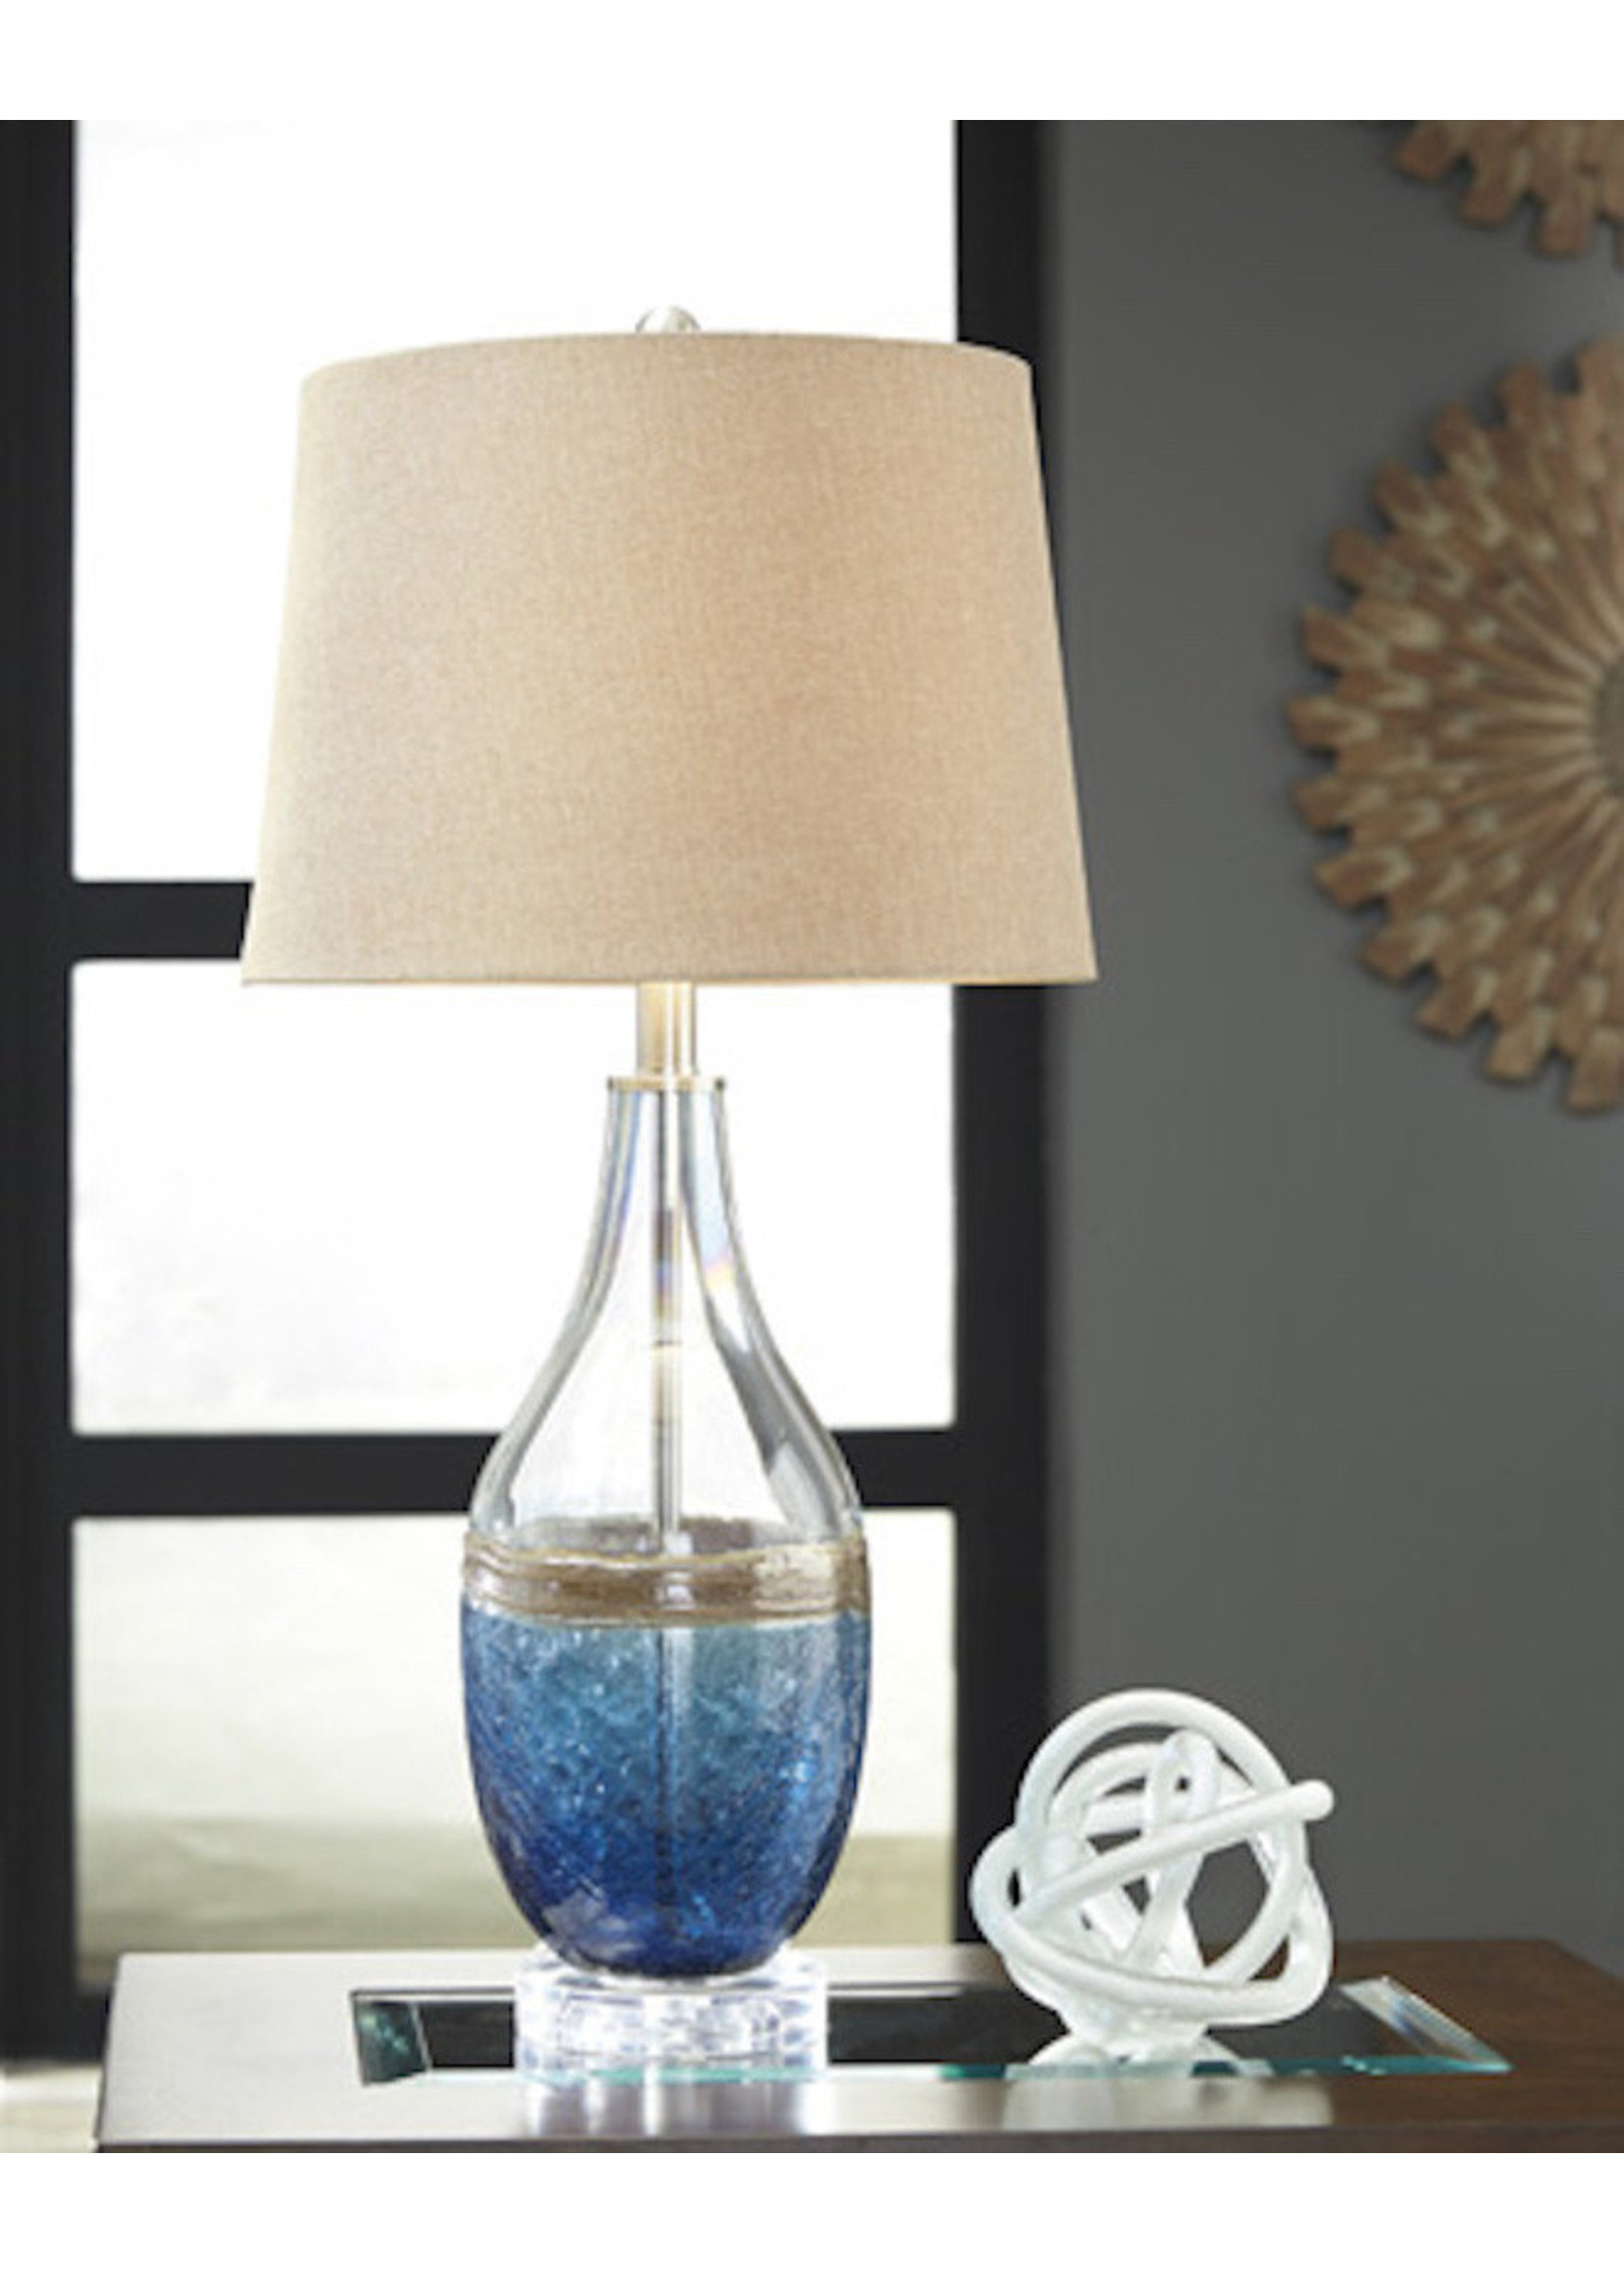 ASHLEY JOHANNA TABLE LAMP IN BLUE/CLEAR